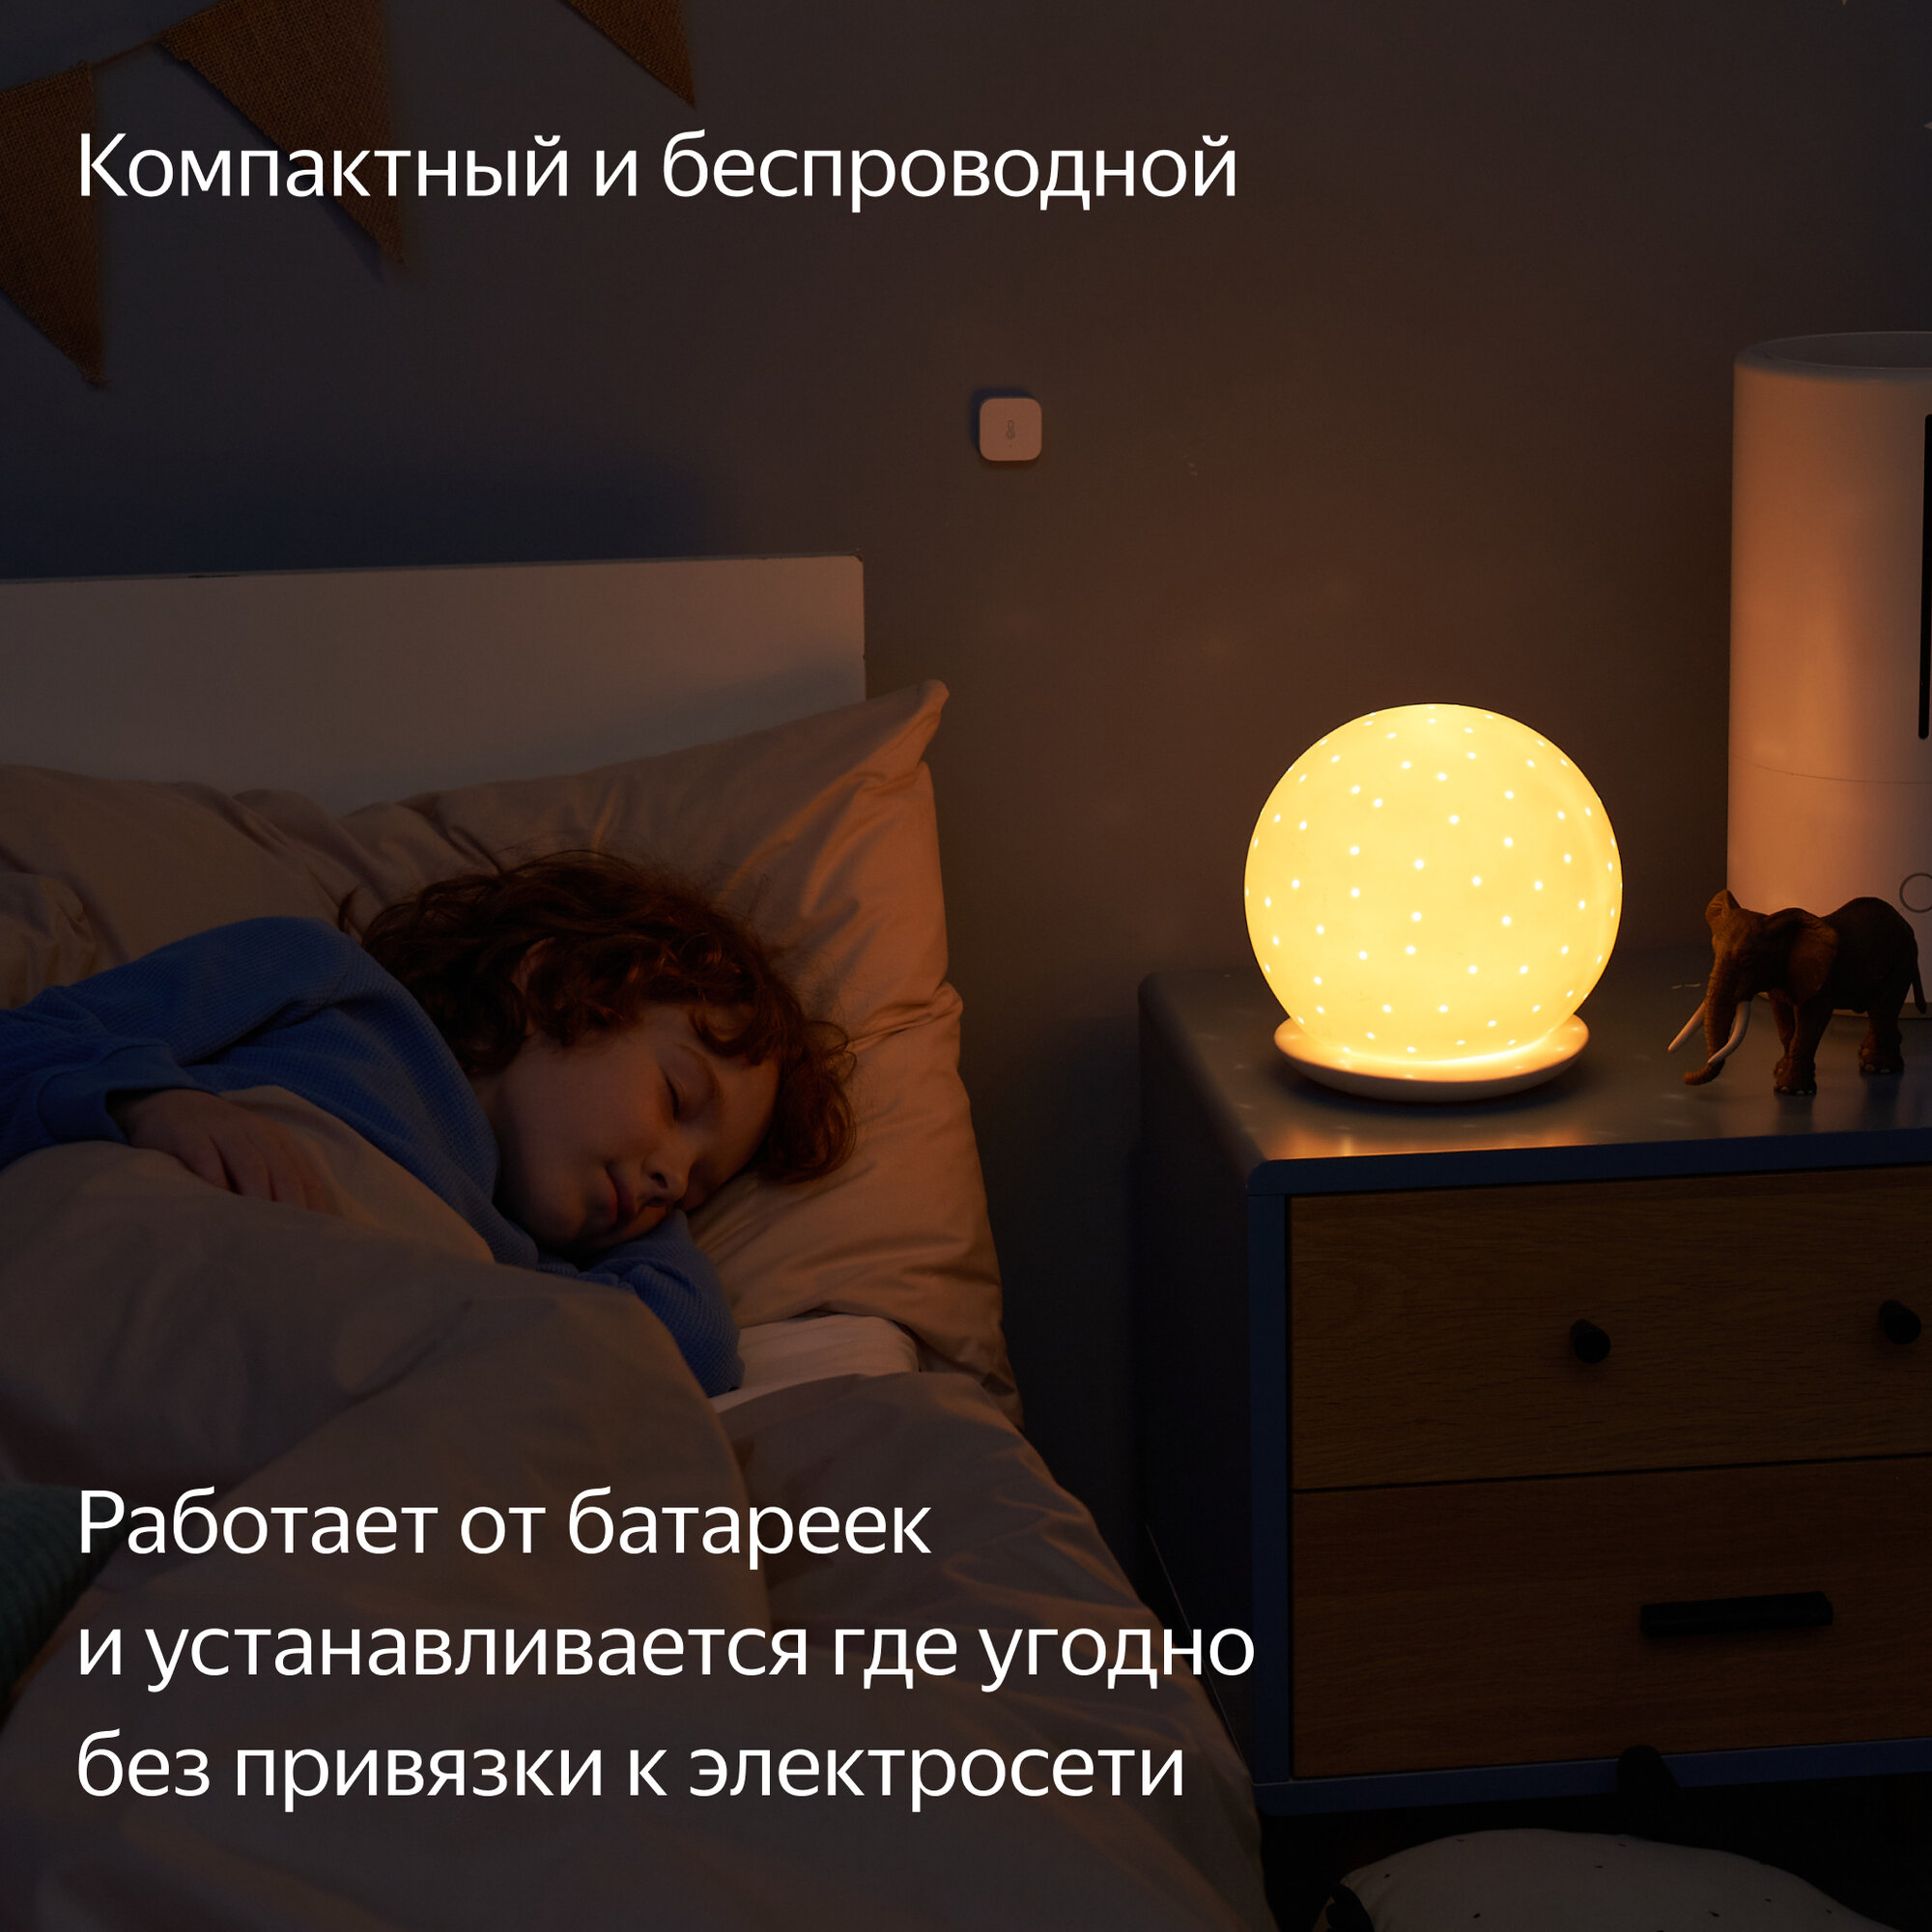 Датчик температуры и влажности, Яндекс, Zigbee